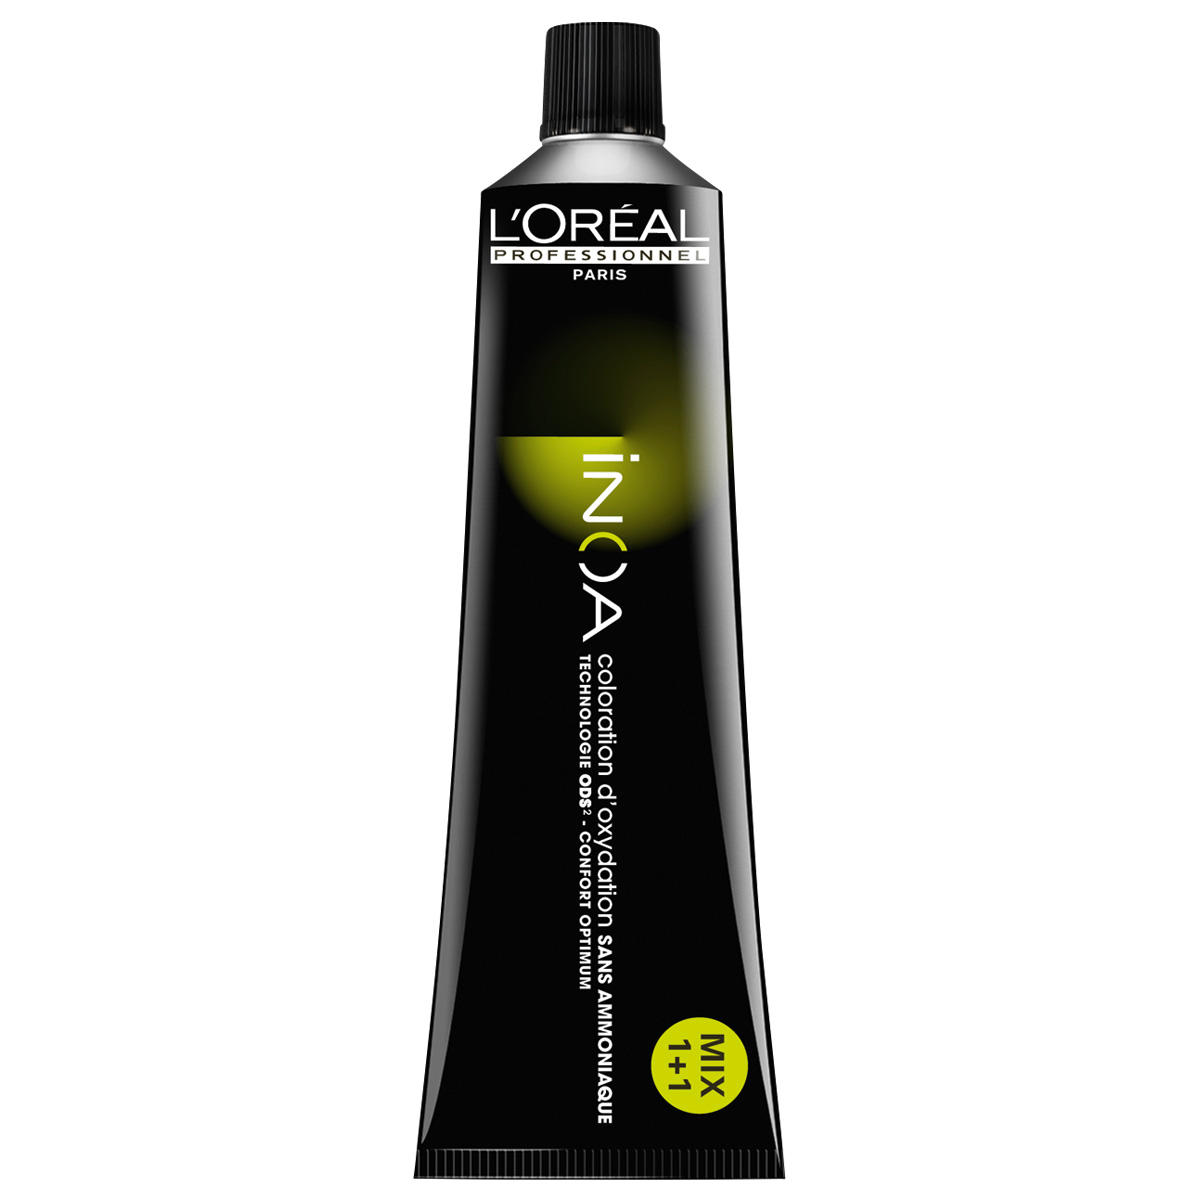 L'Oréal Professionnel Paris Coloration 6.46 Biondo scuro rosso rame, Tubo 60 ml